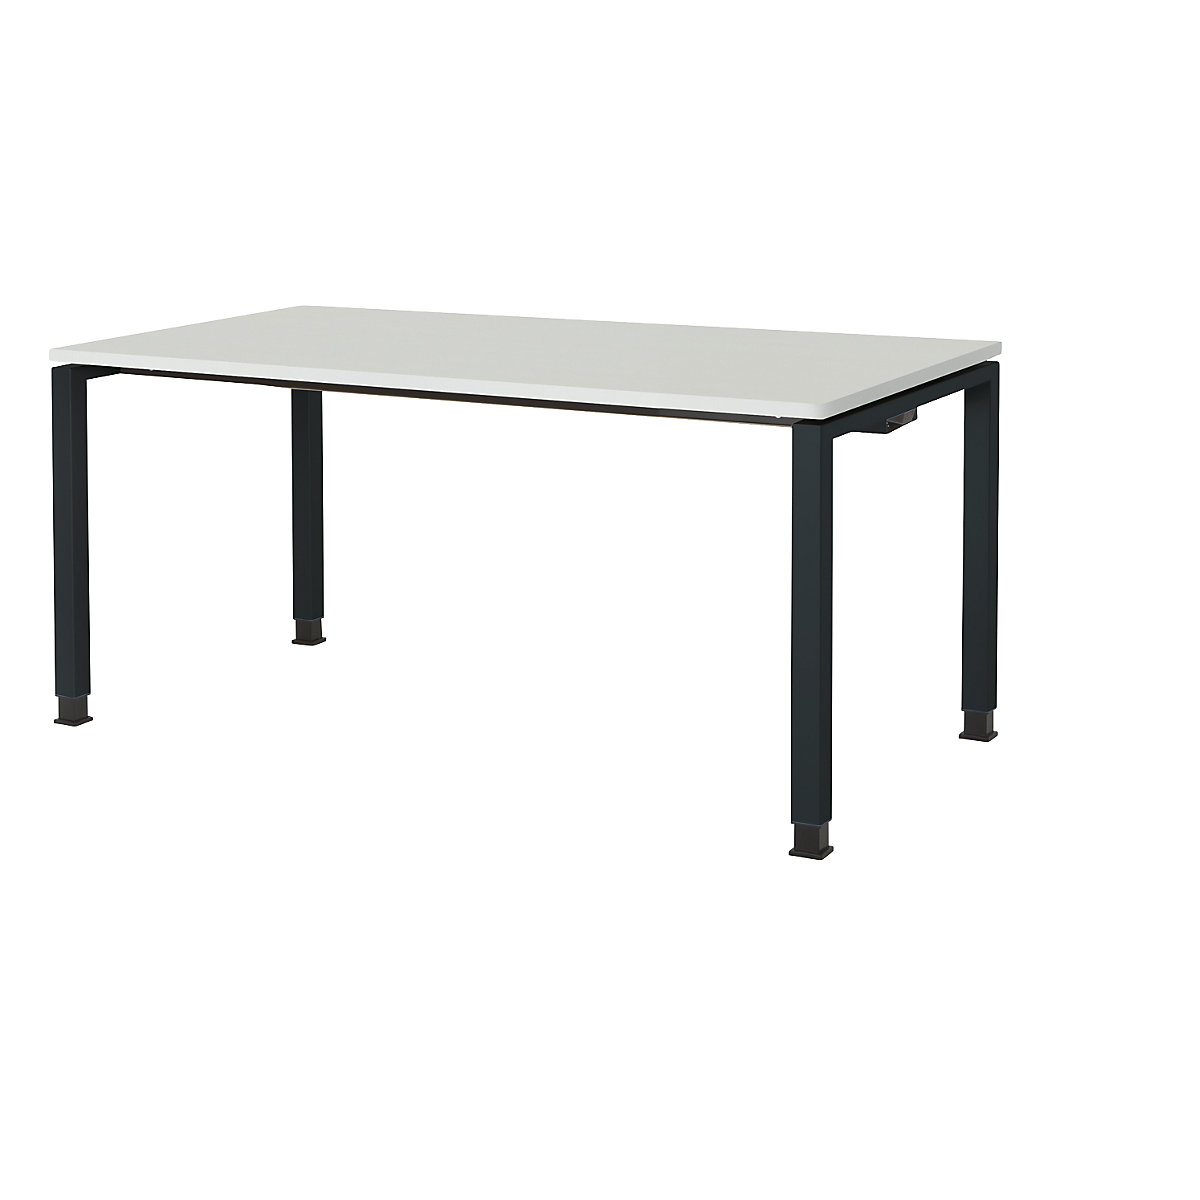 Stół prostokątny, konstrukcja nogi z rurki kwadratowej – mauser